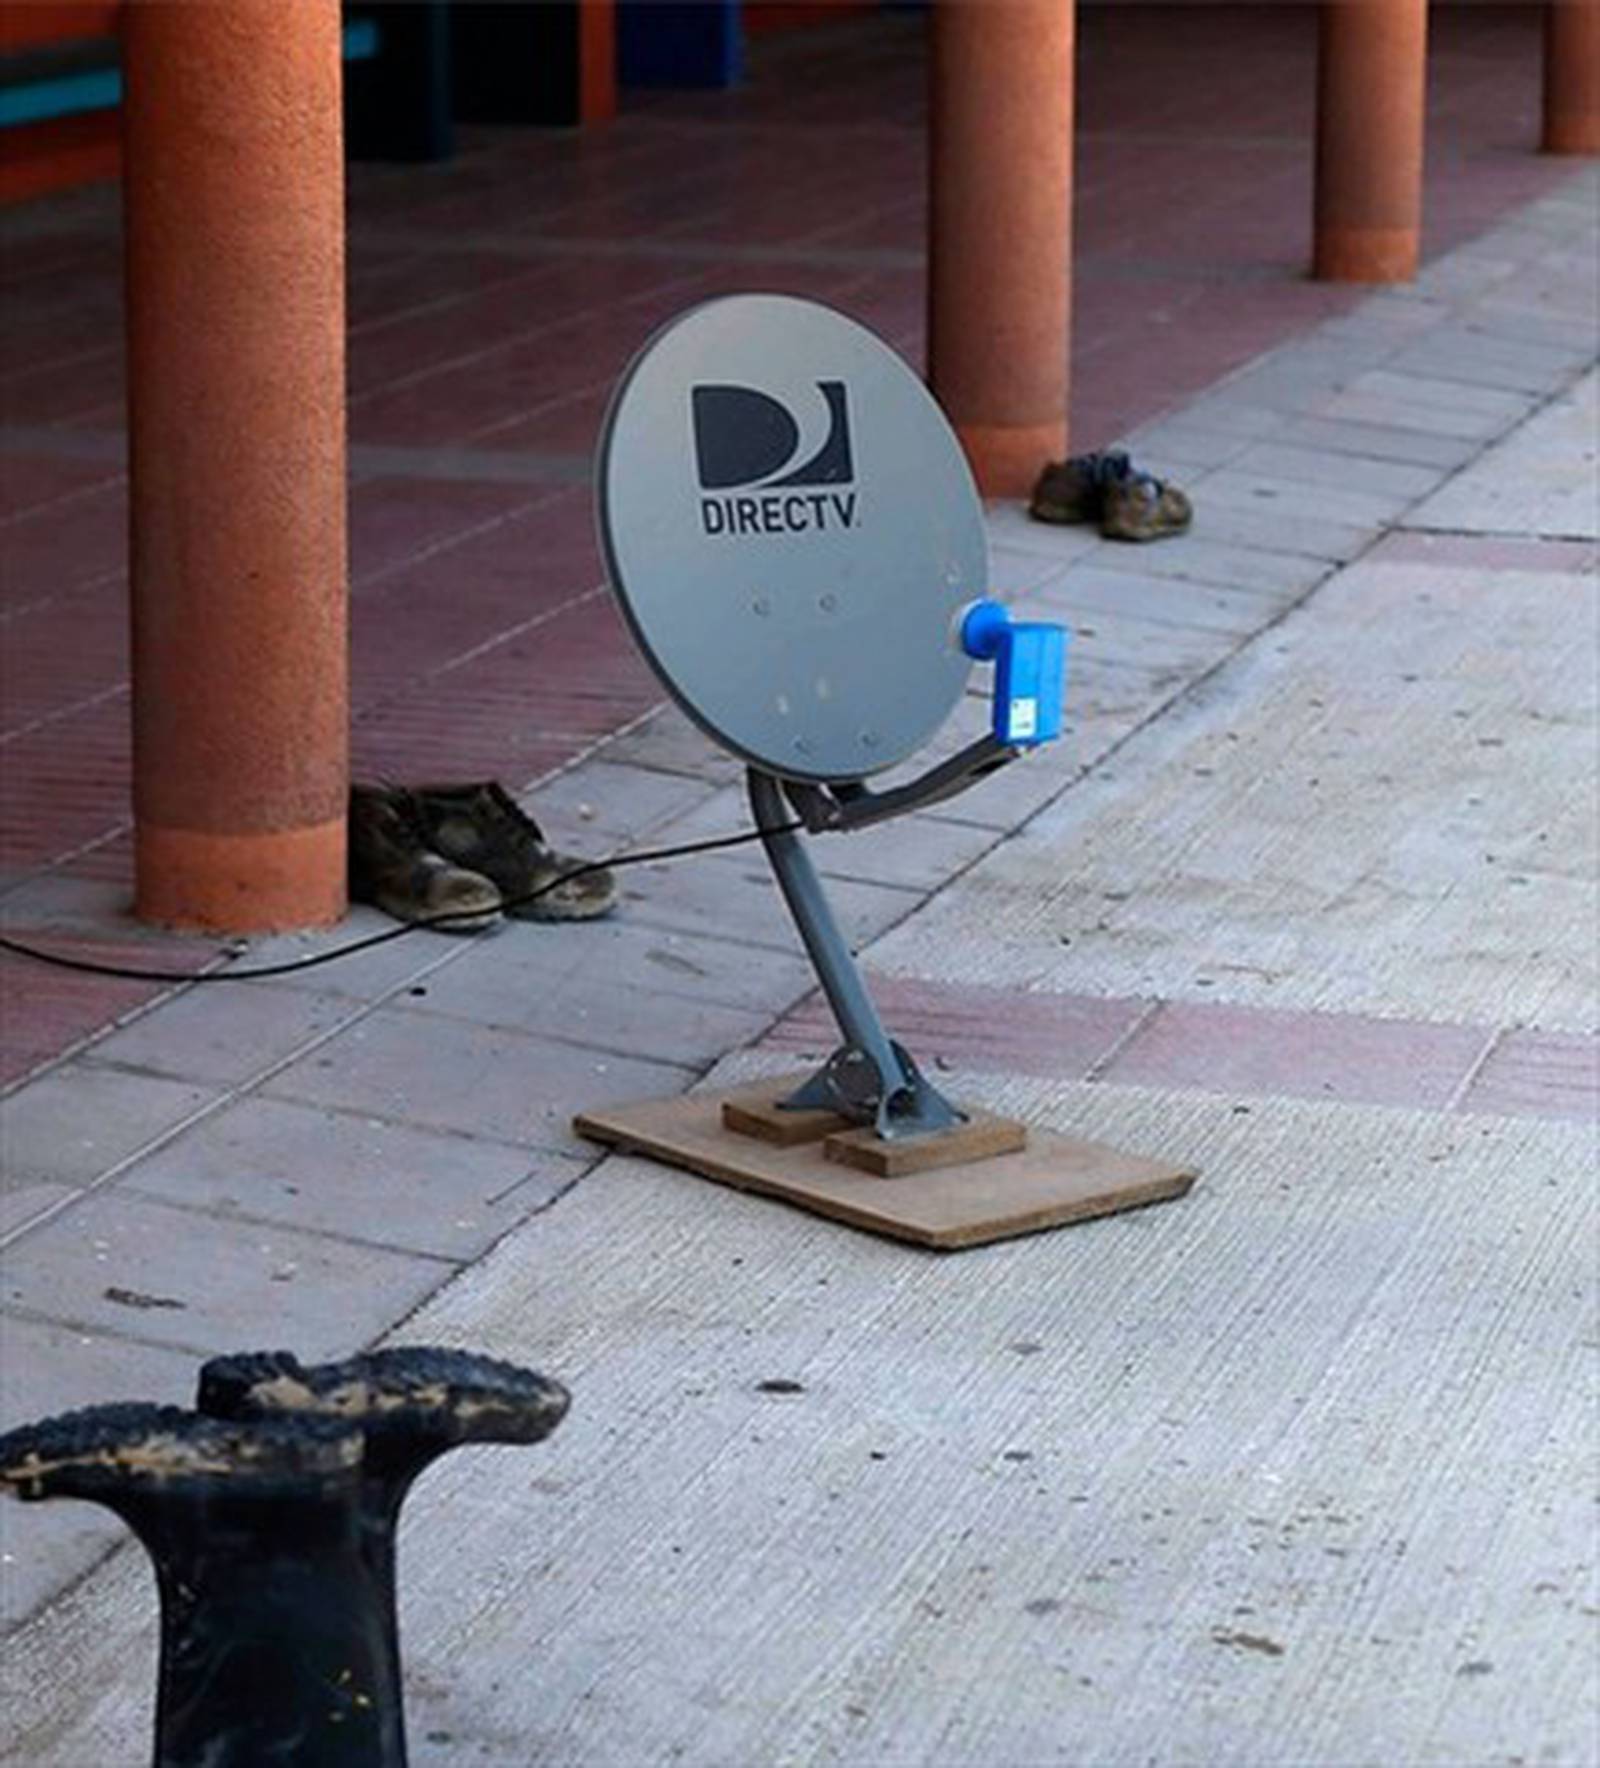 Apagón de decodificadores de TV satelital con software pirata en Chile -  Televisión por Cable - Radiomaniacos, El Foro de la Radio en Chile